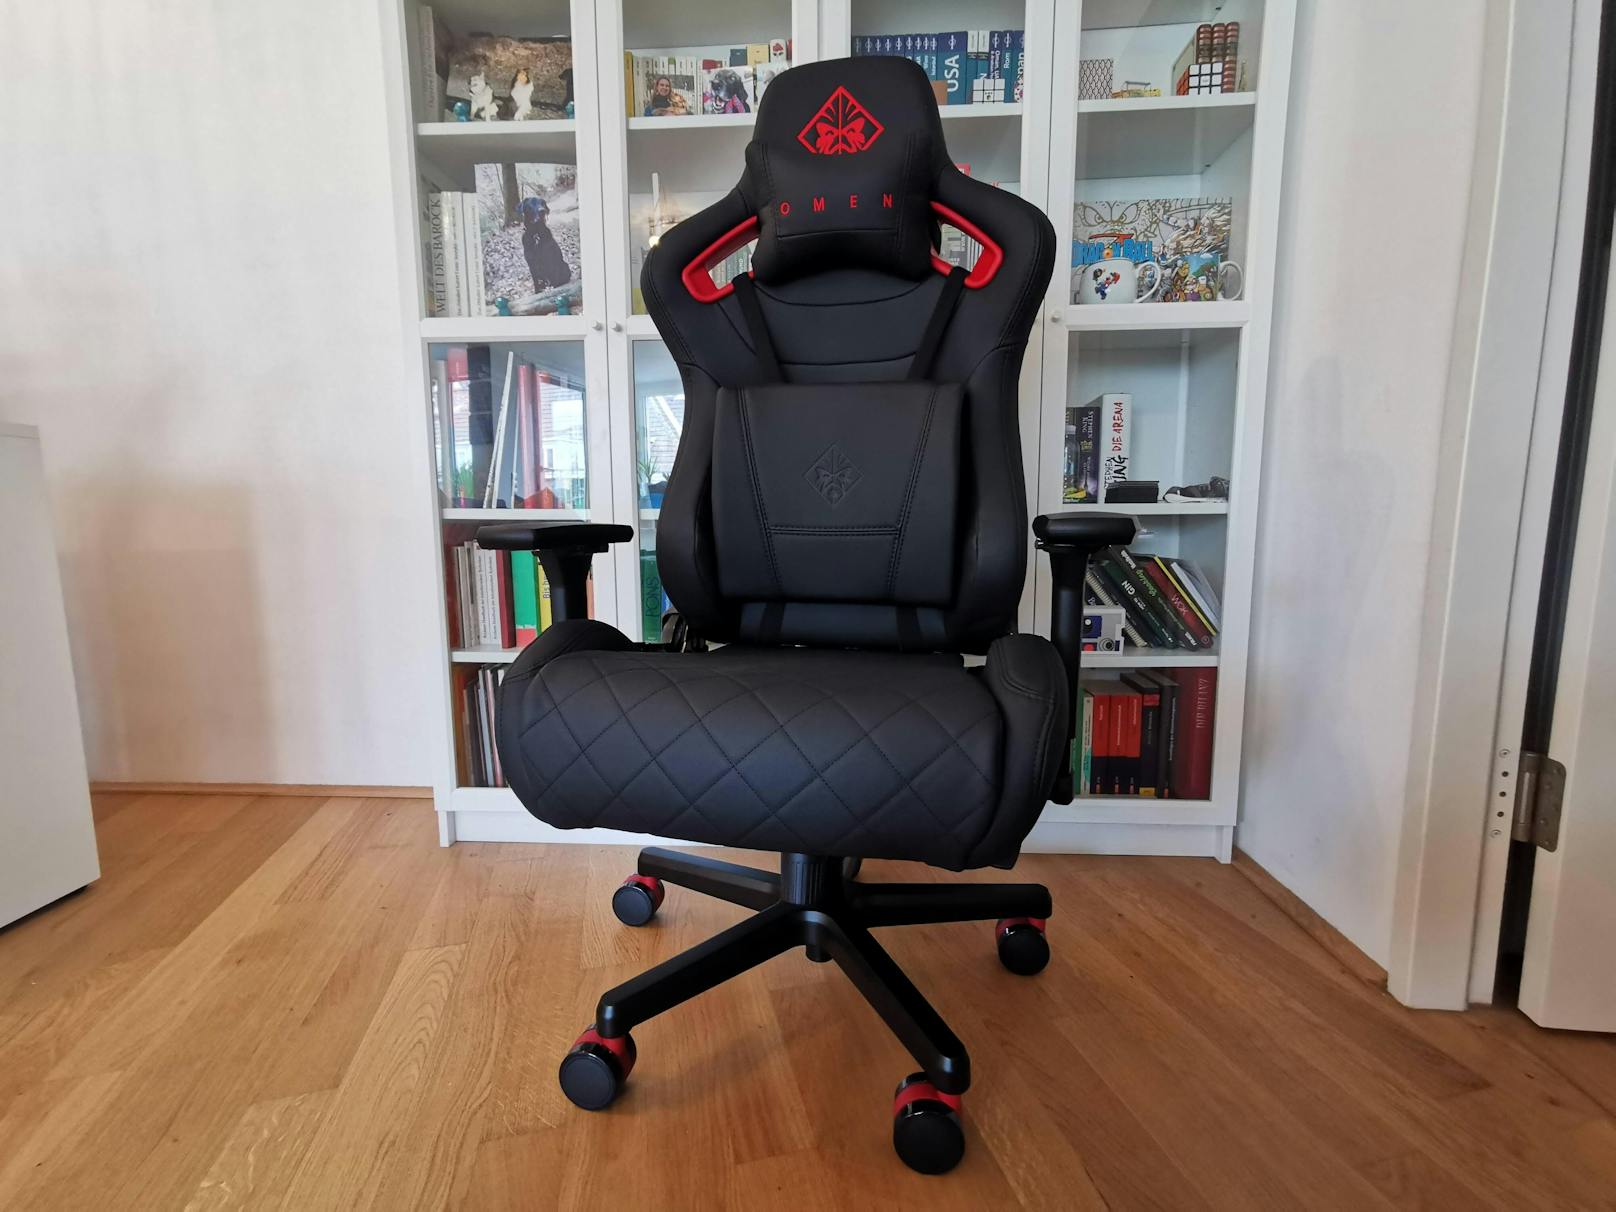 Farblich gibt es derzeit nur eine Kombination: Schwarzer Stuhl, rote Design-Elemente – so wie man es von den meisten Produkten der Omen-Serie kennt.